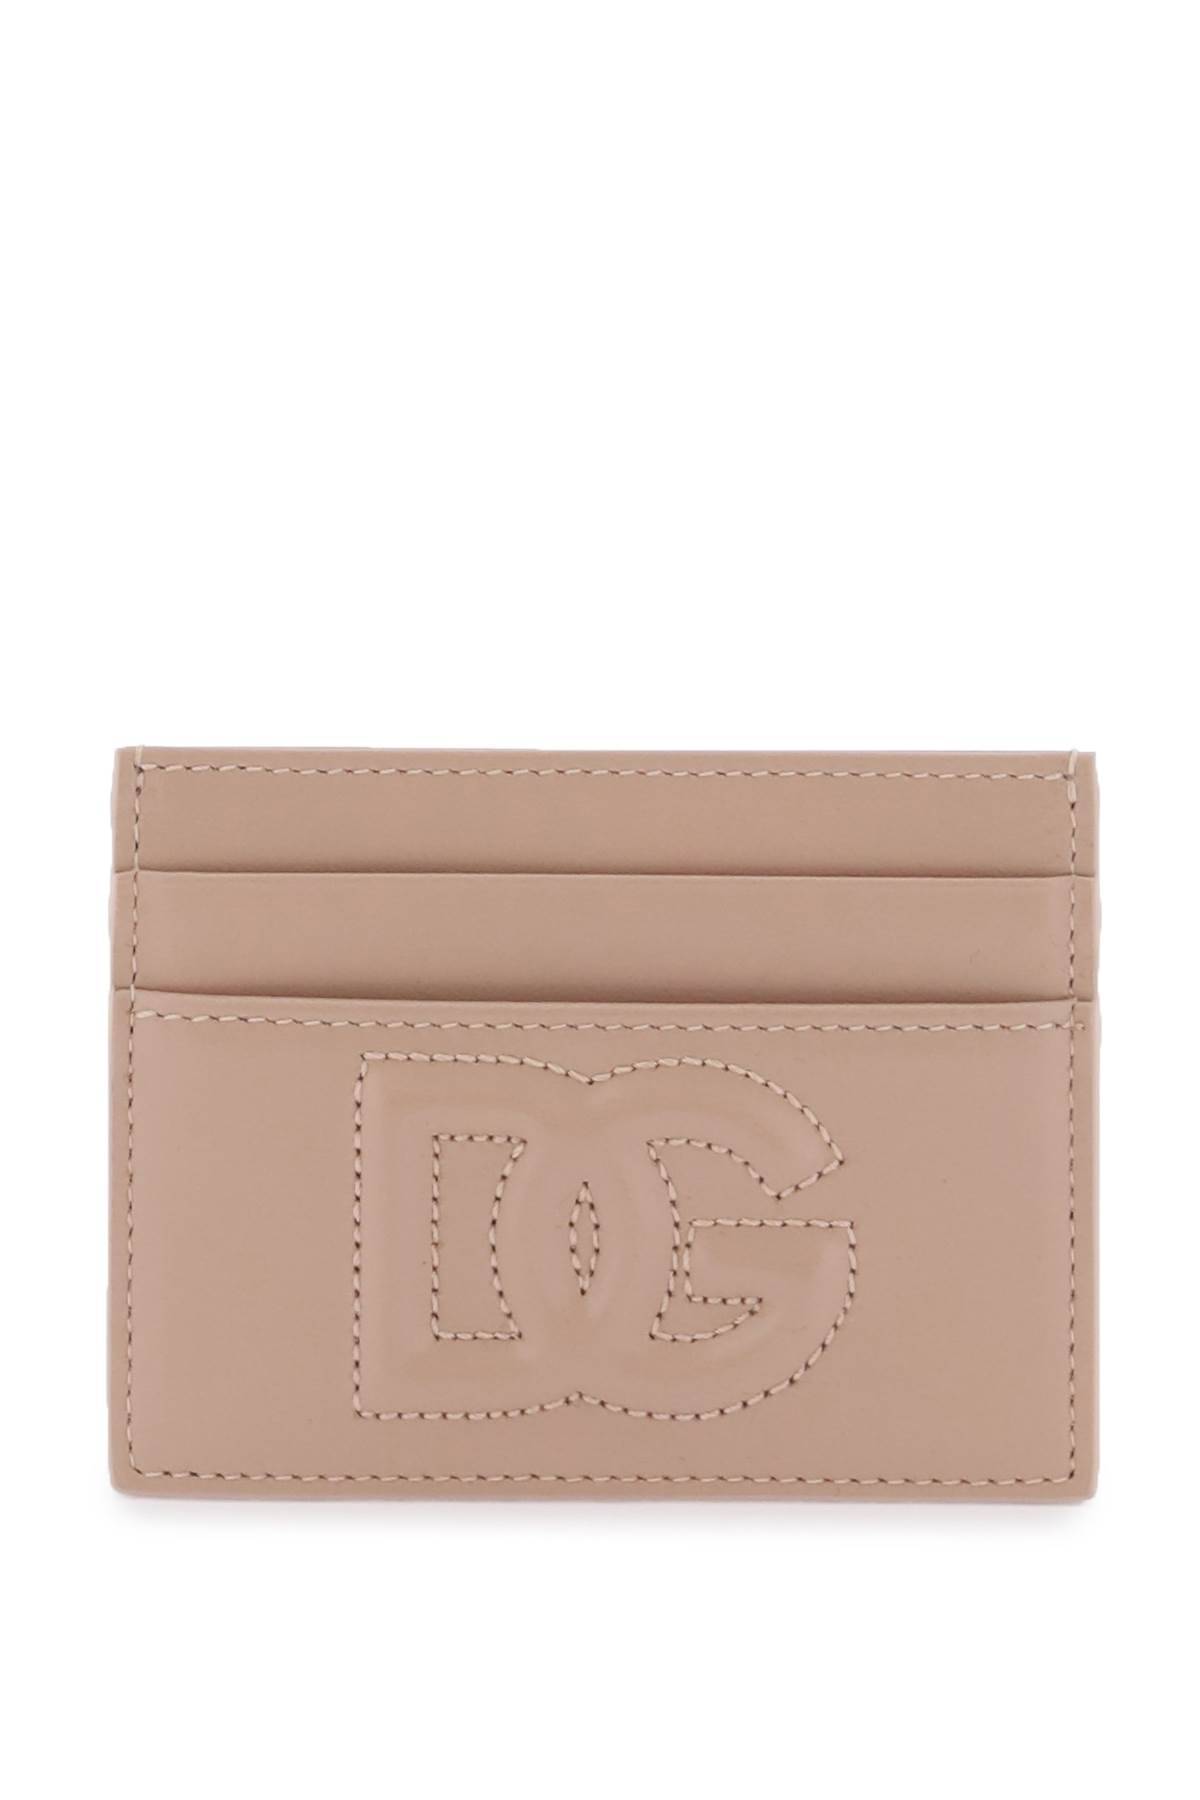 DOLCE & GABBANA card holder with logo